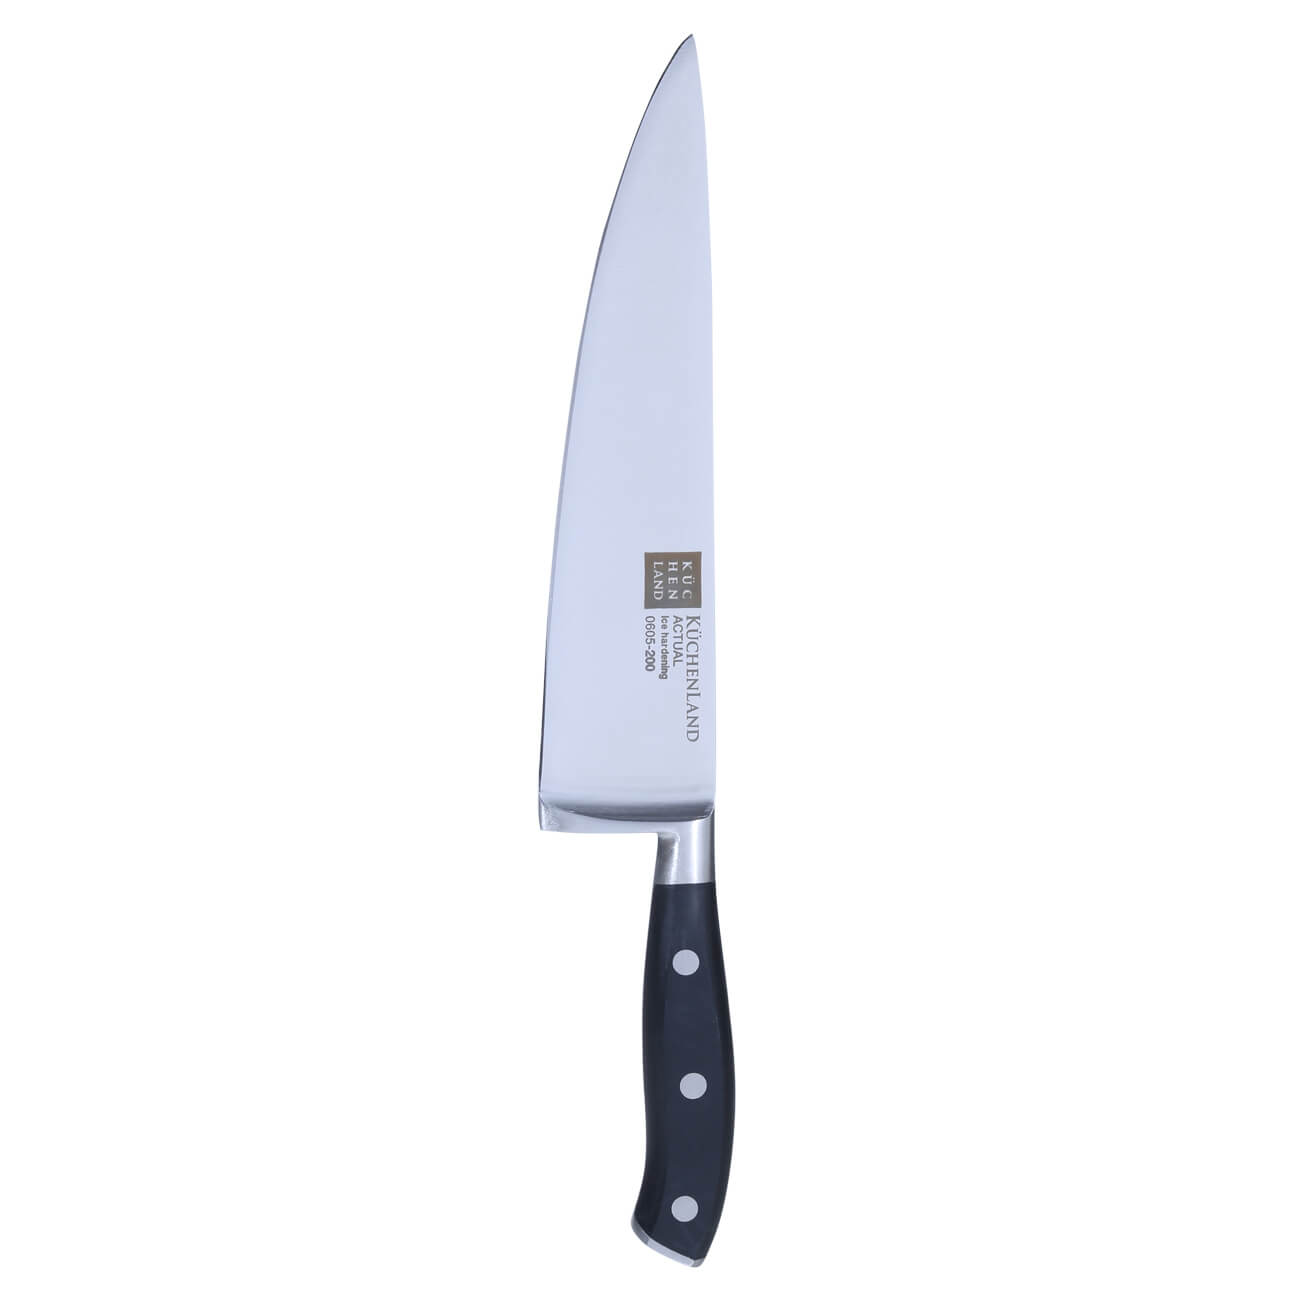 Нож поварской, 20 см, сталь/пластик, Actual малый поварской нож mallony